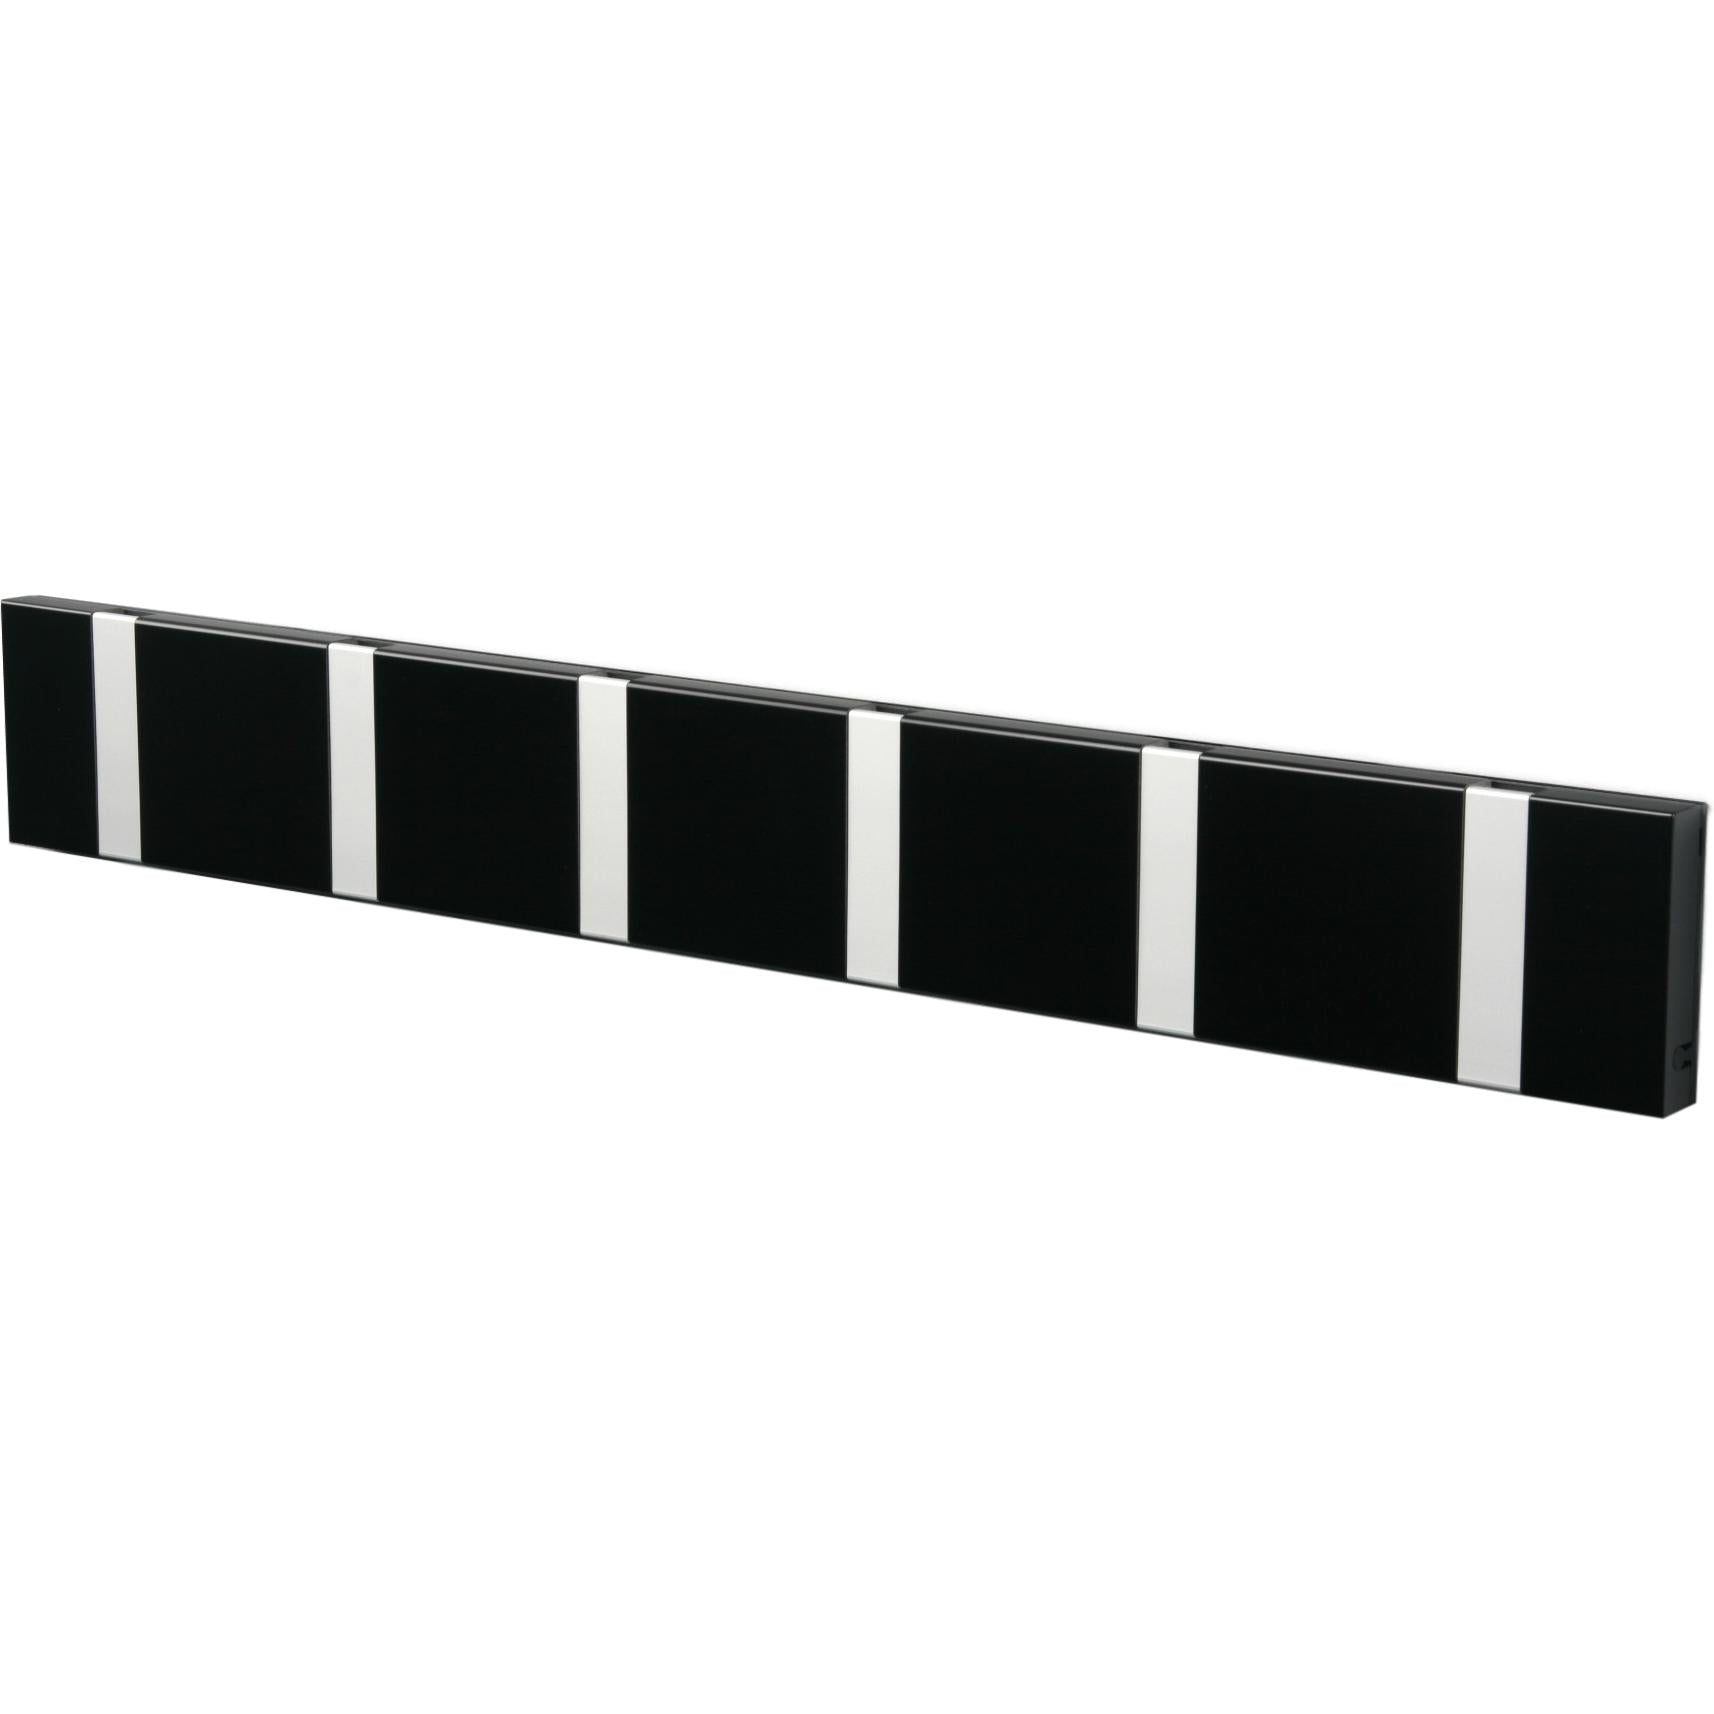 Loca Knax horizontaler Kleiderregal 6 Haken, schwarz/grau